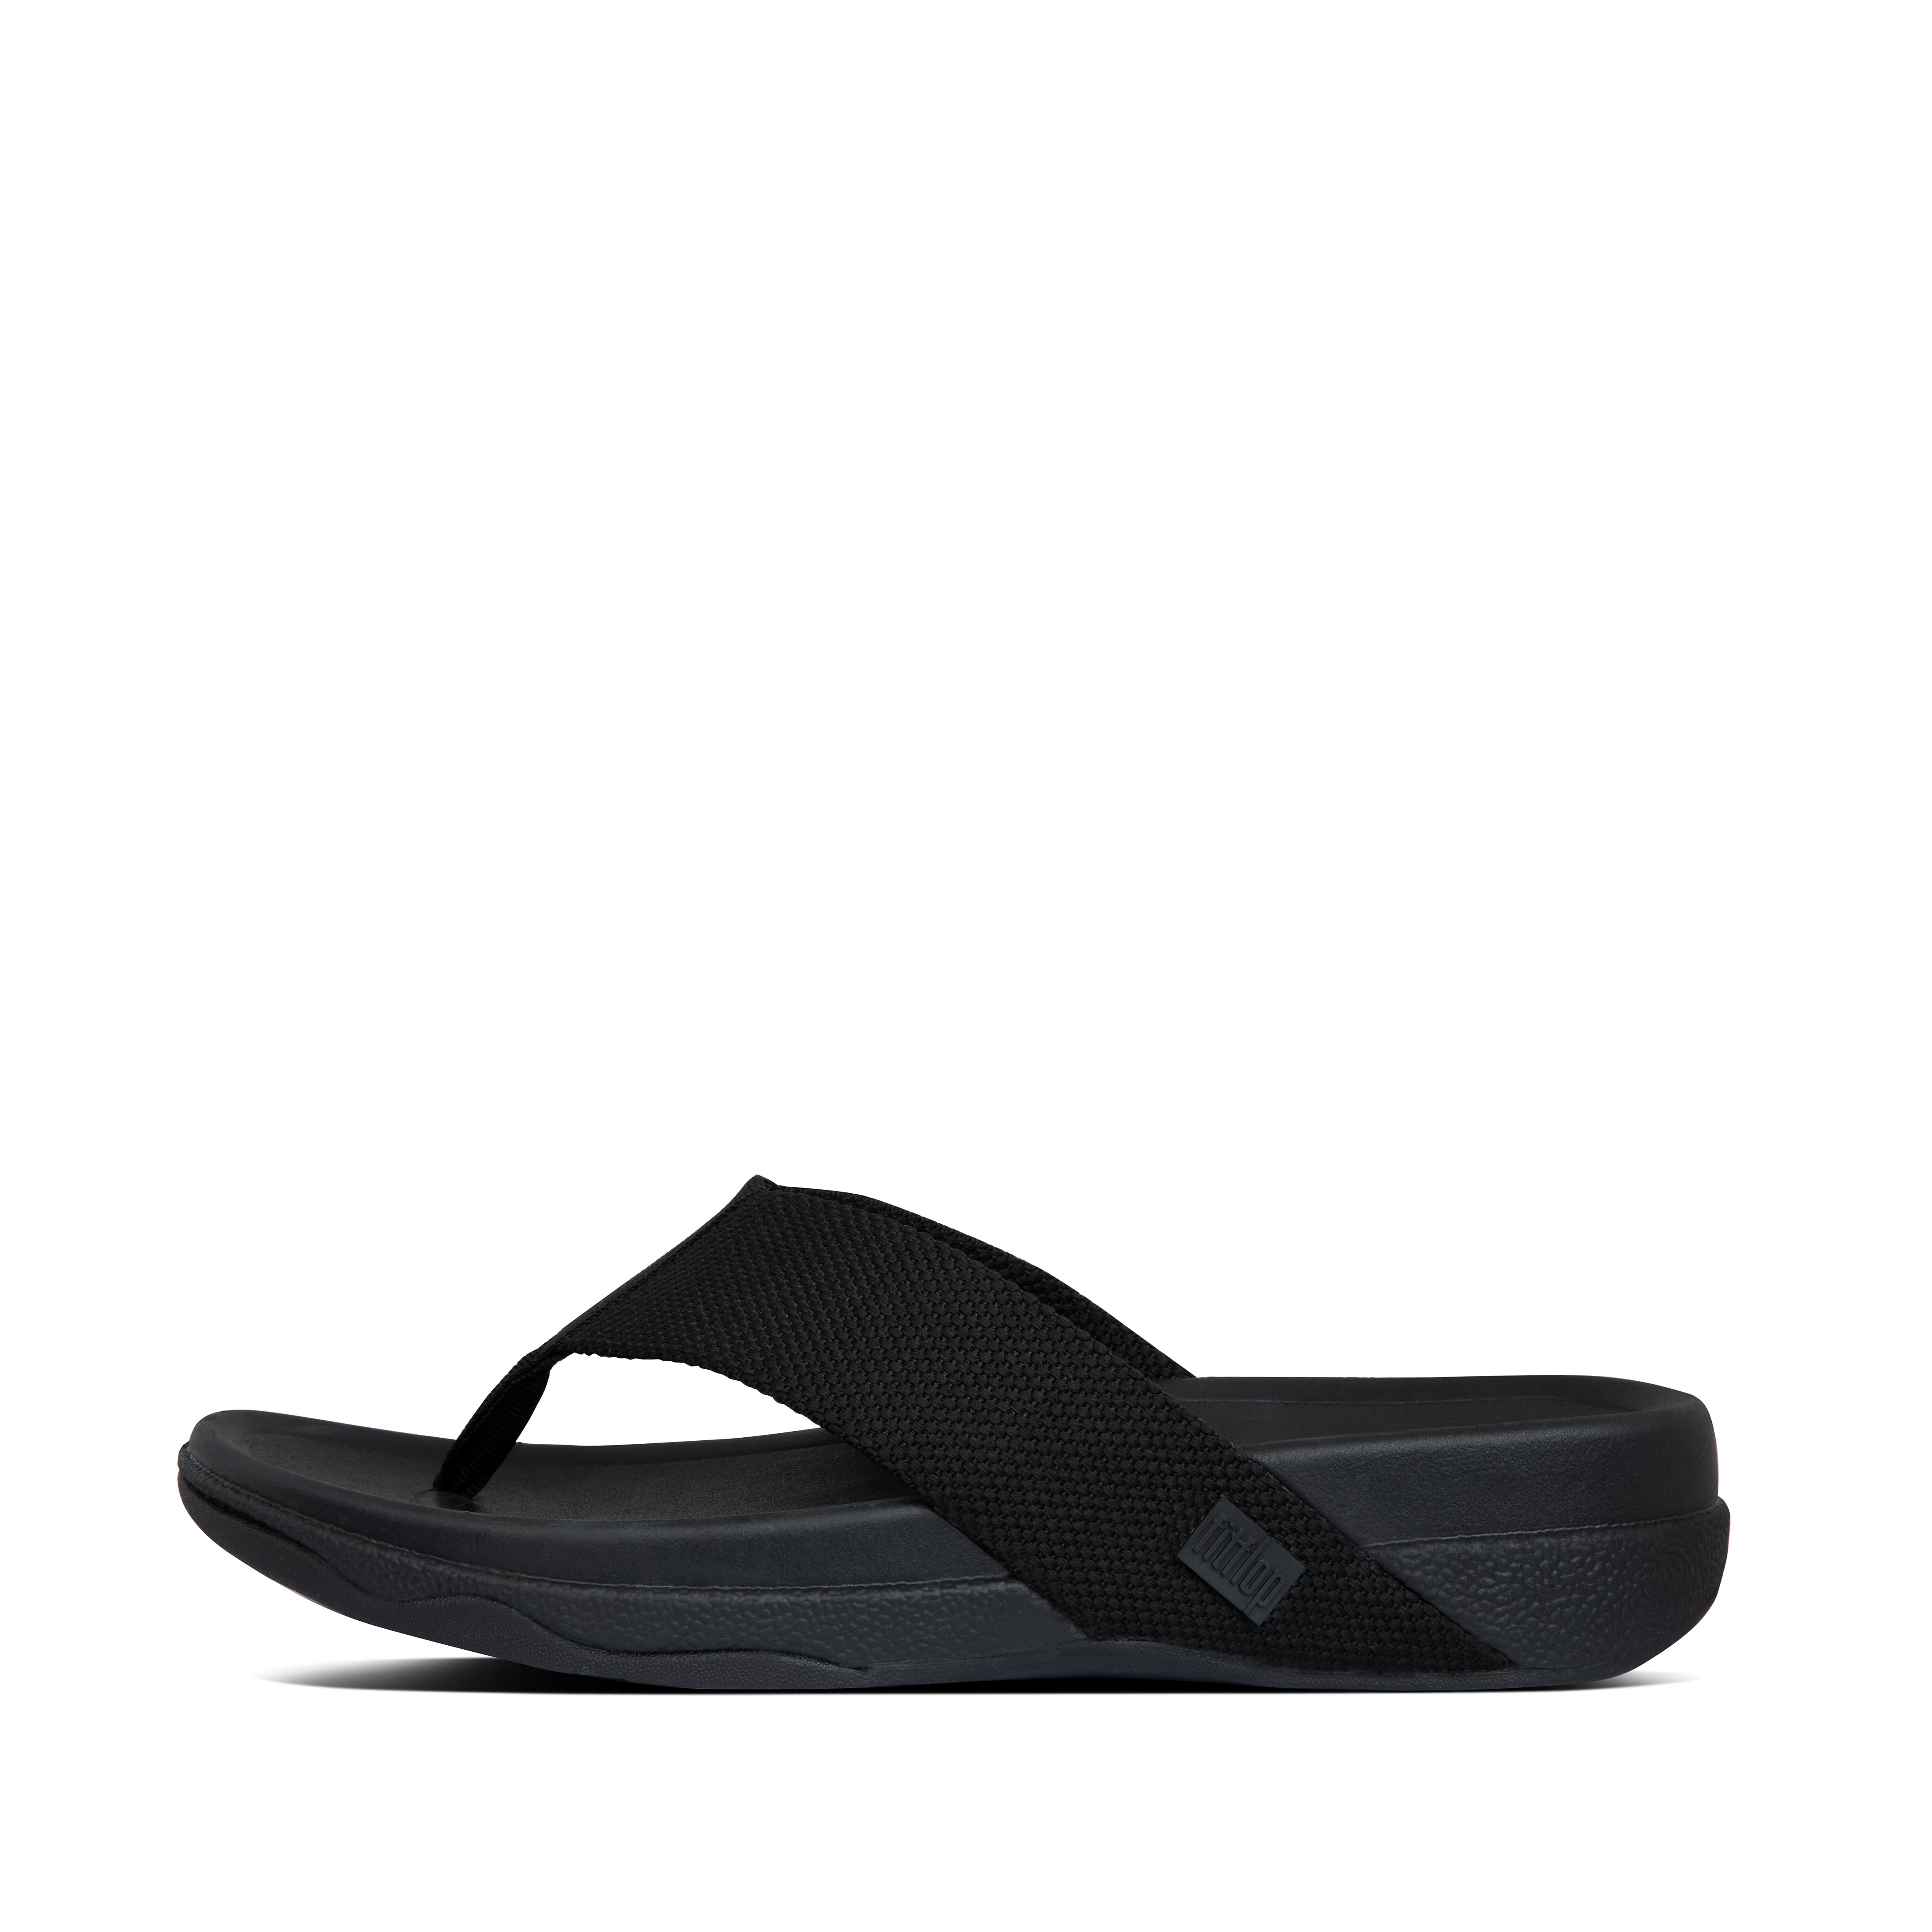 핏플랍 샌들 FitFlop SURFER Mens Toe-Post Sandals,Black